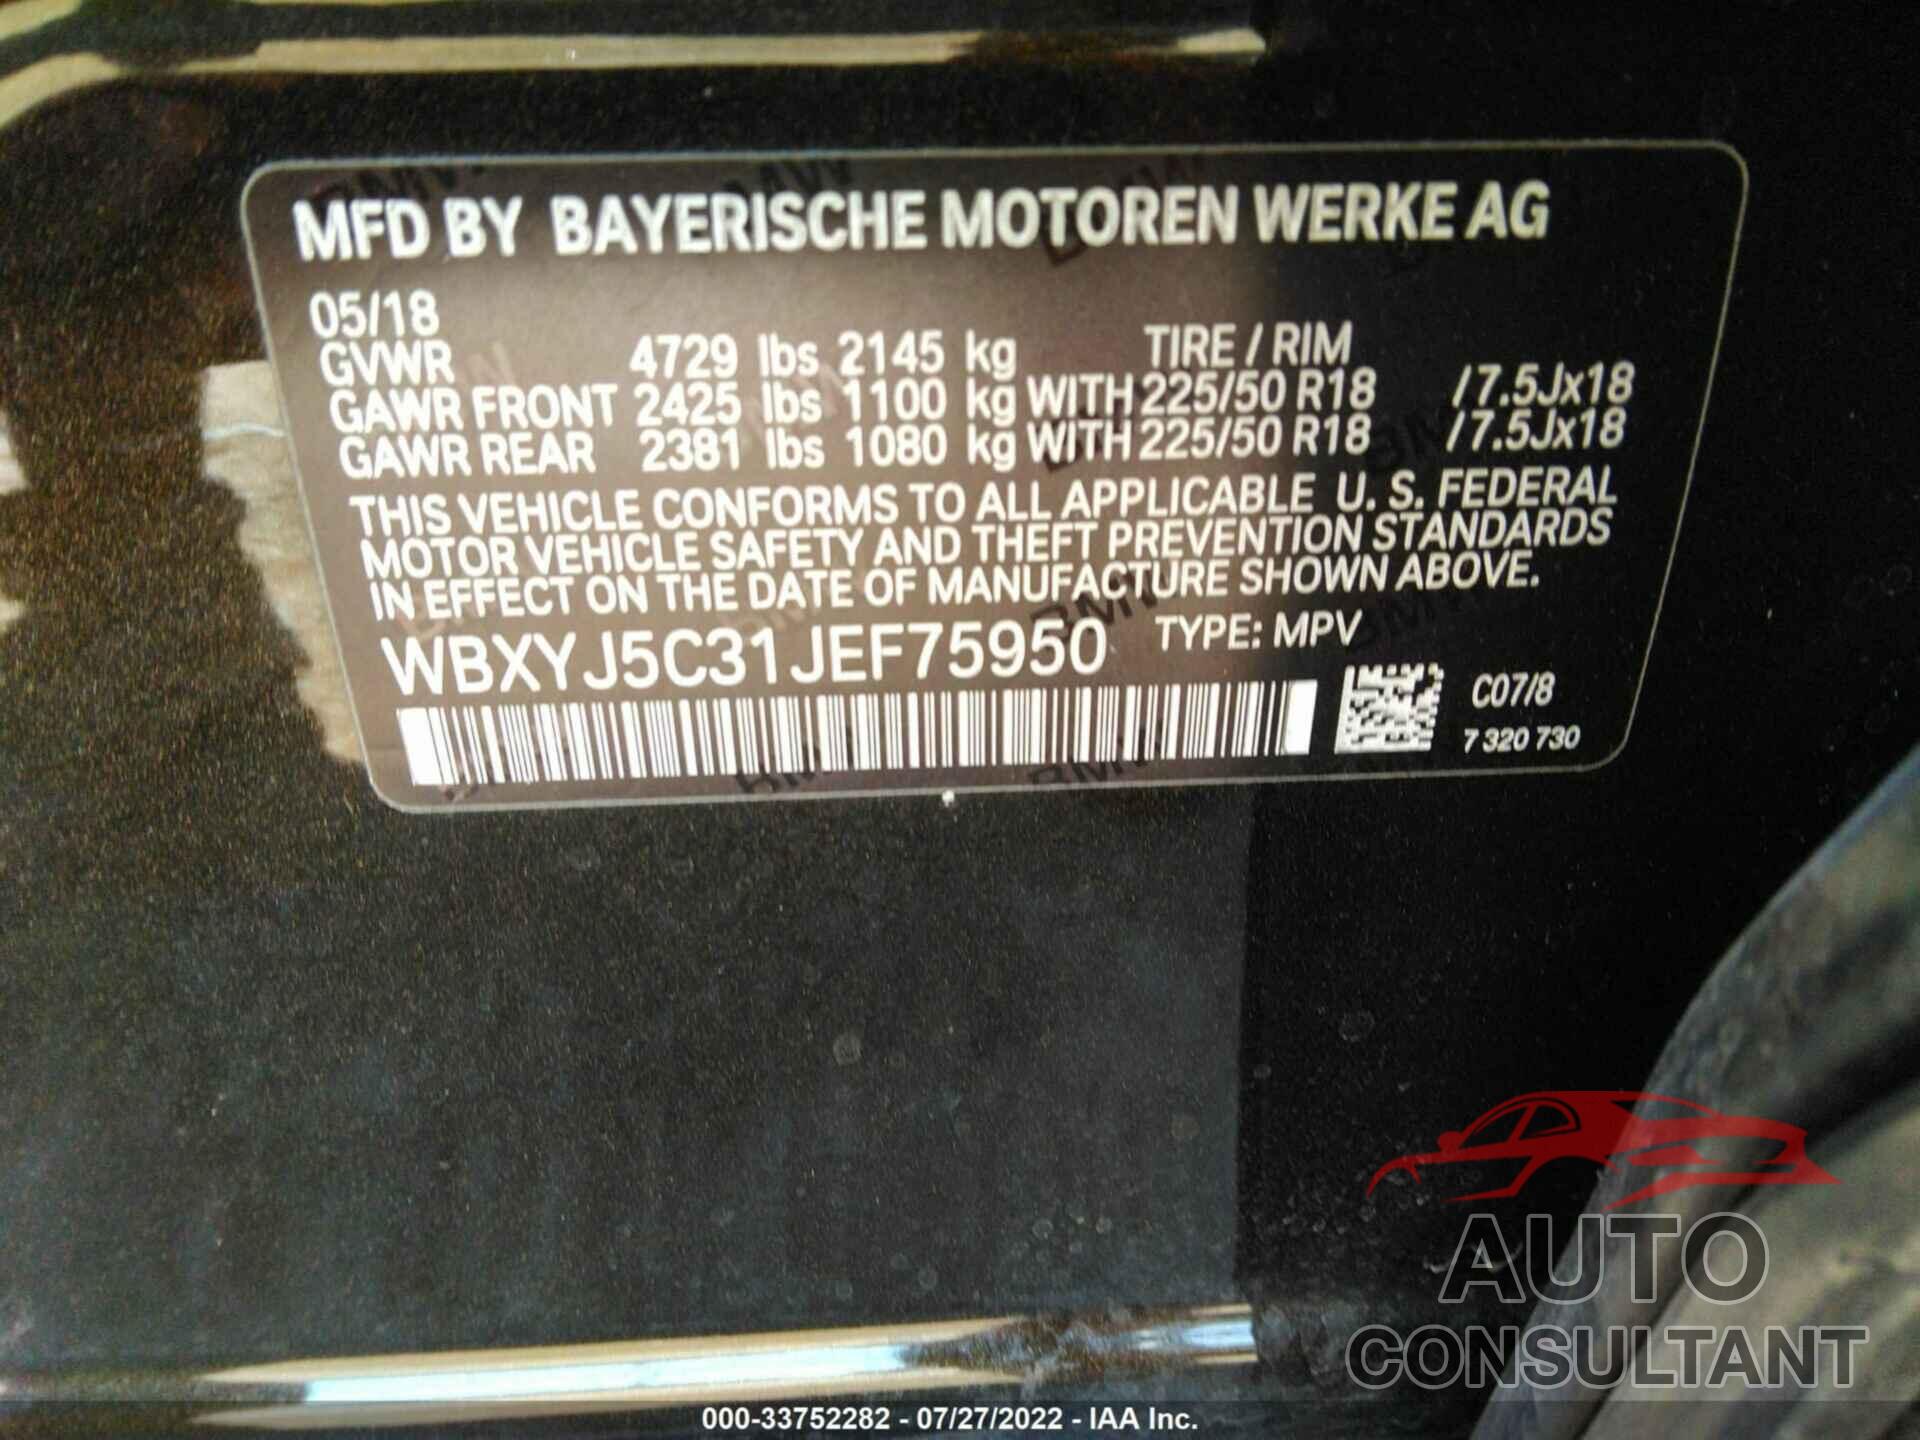 BMW X2 2018 - WBXYJ5C31JEF75950